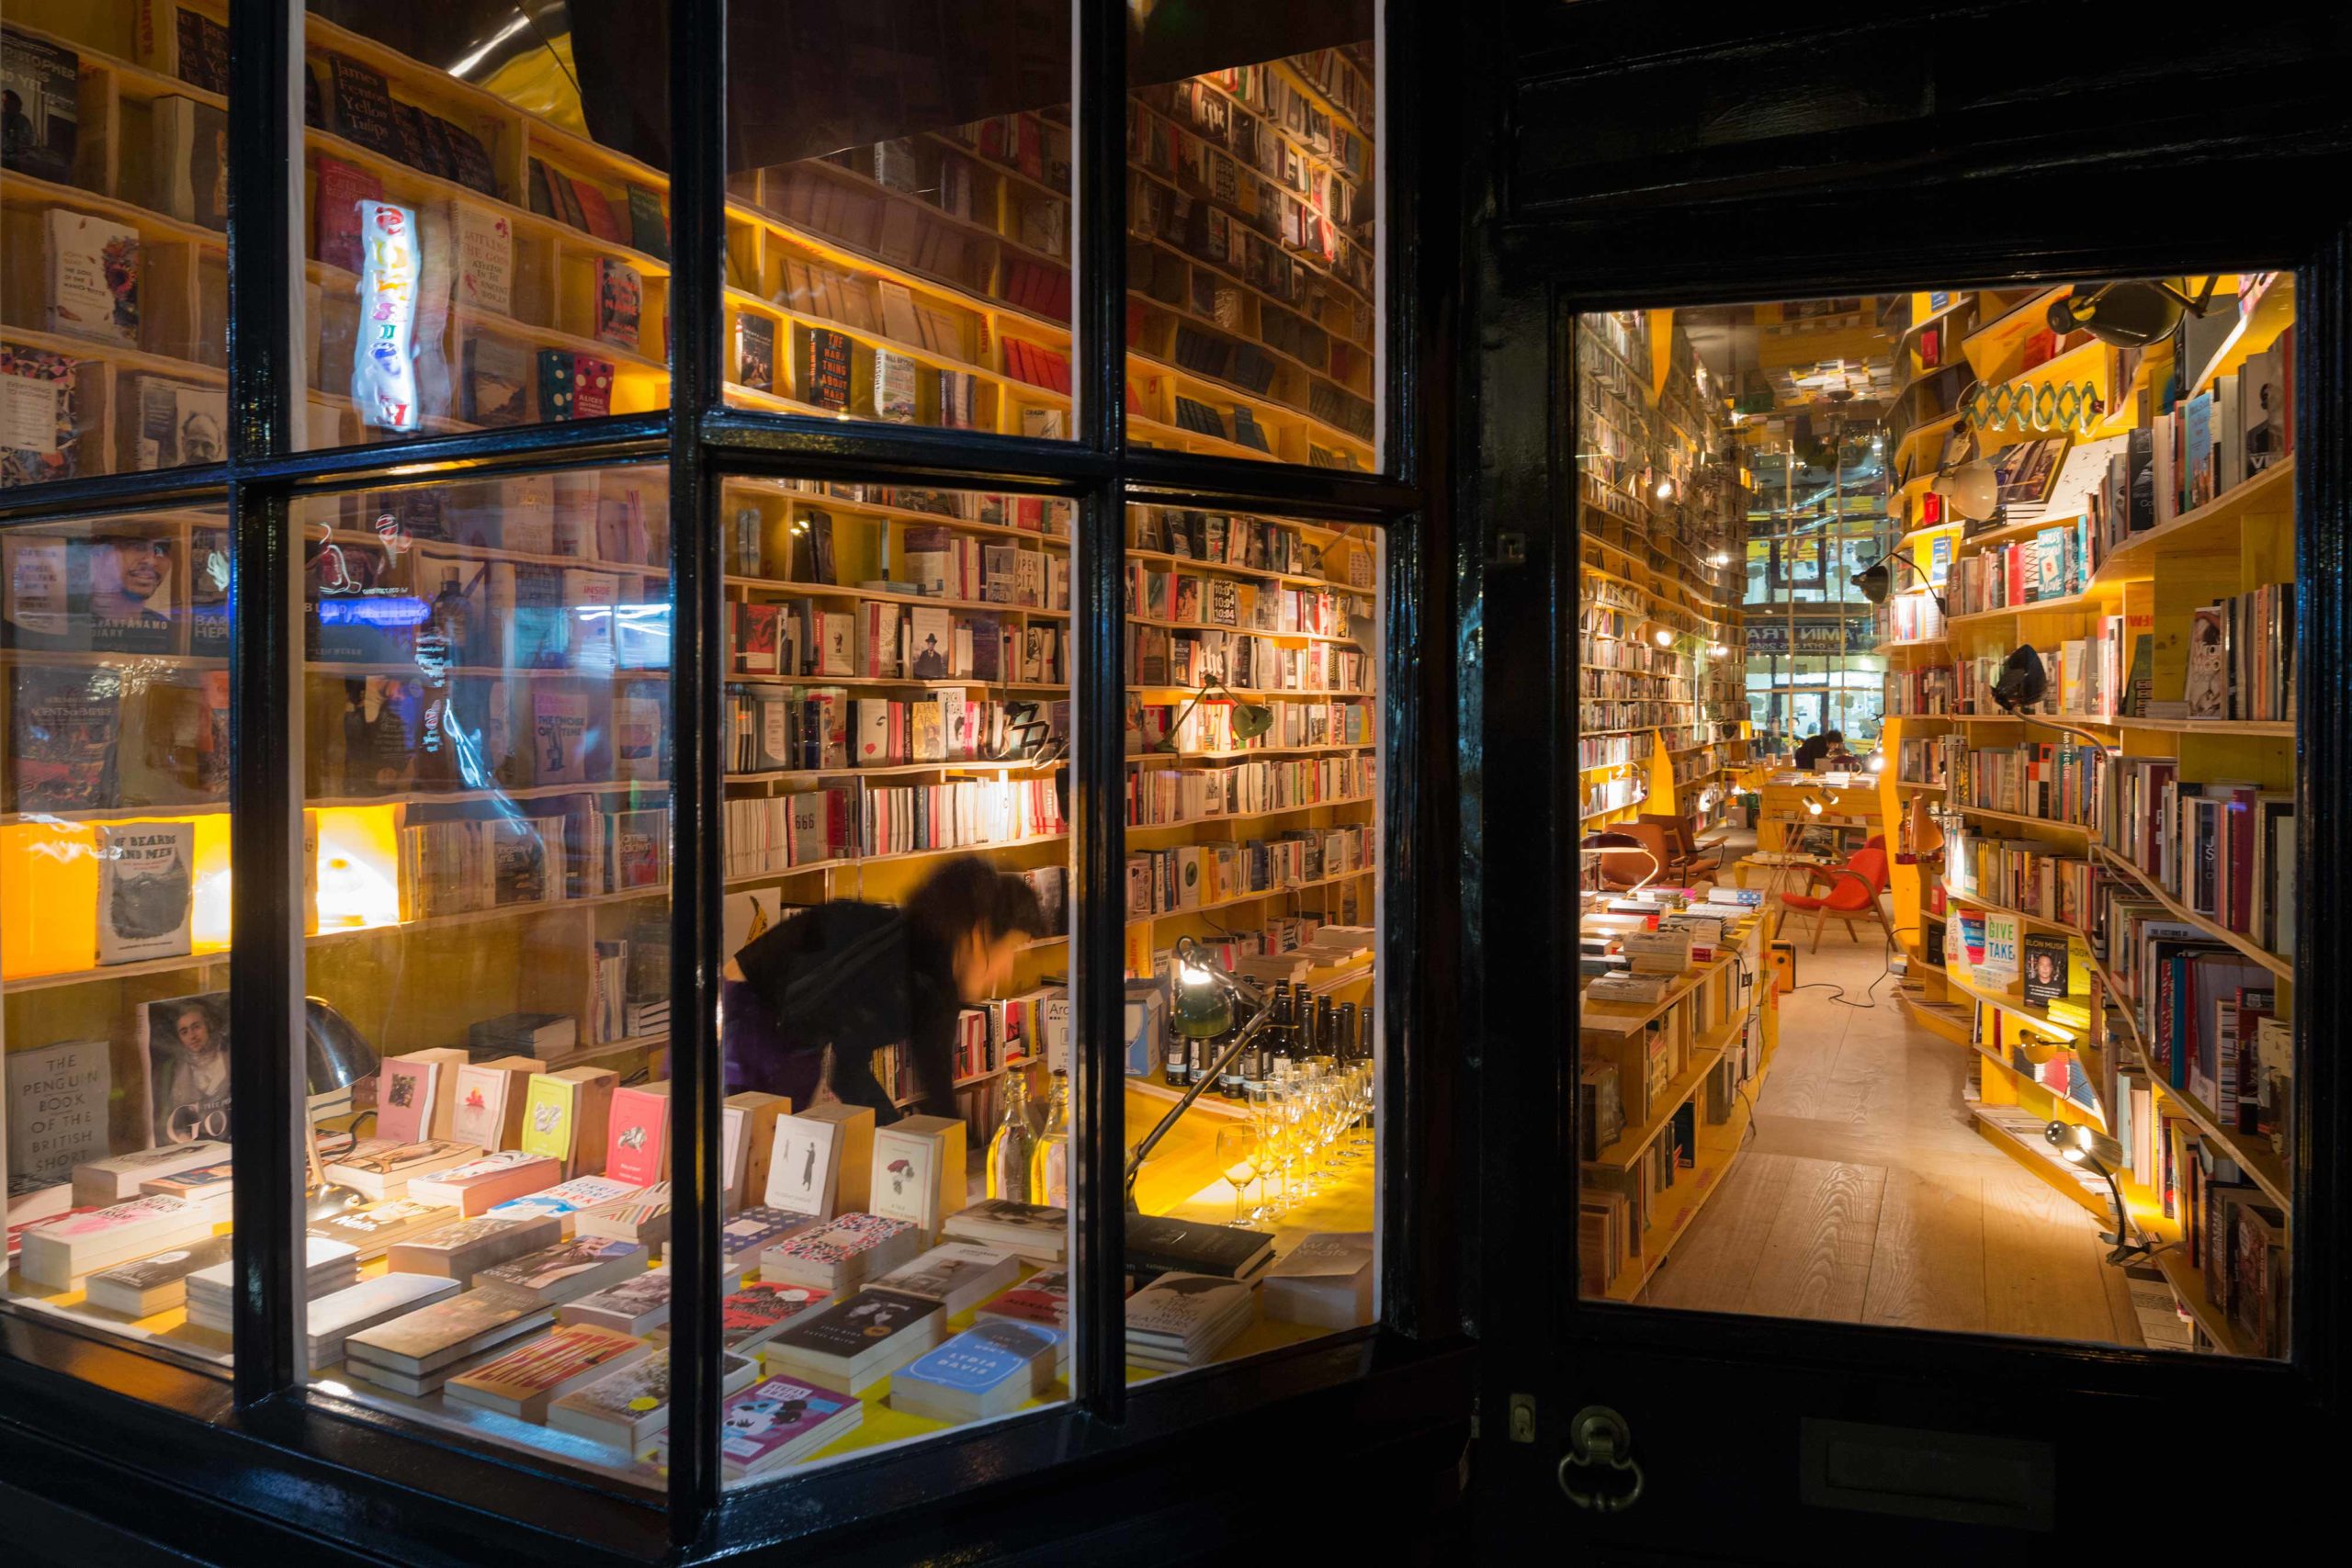 More books shop. Libreria книжный London. Книжный магазин в Лондоне. Витрина книжного магазина. Красивые витрины книжного магазина.